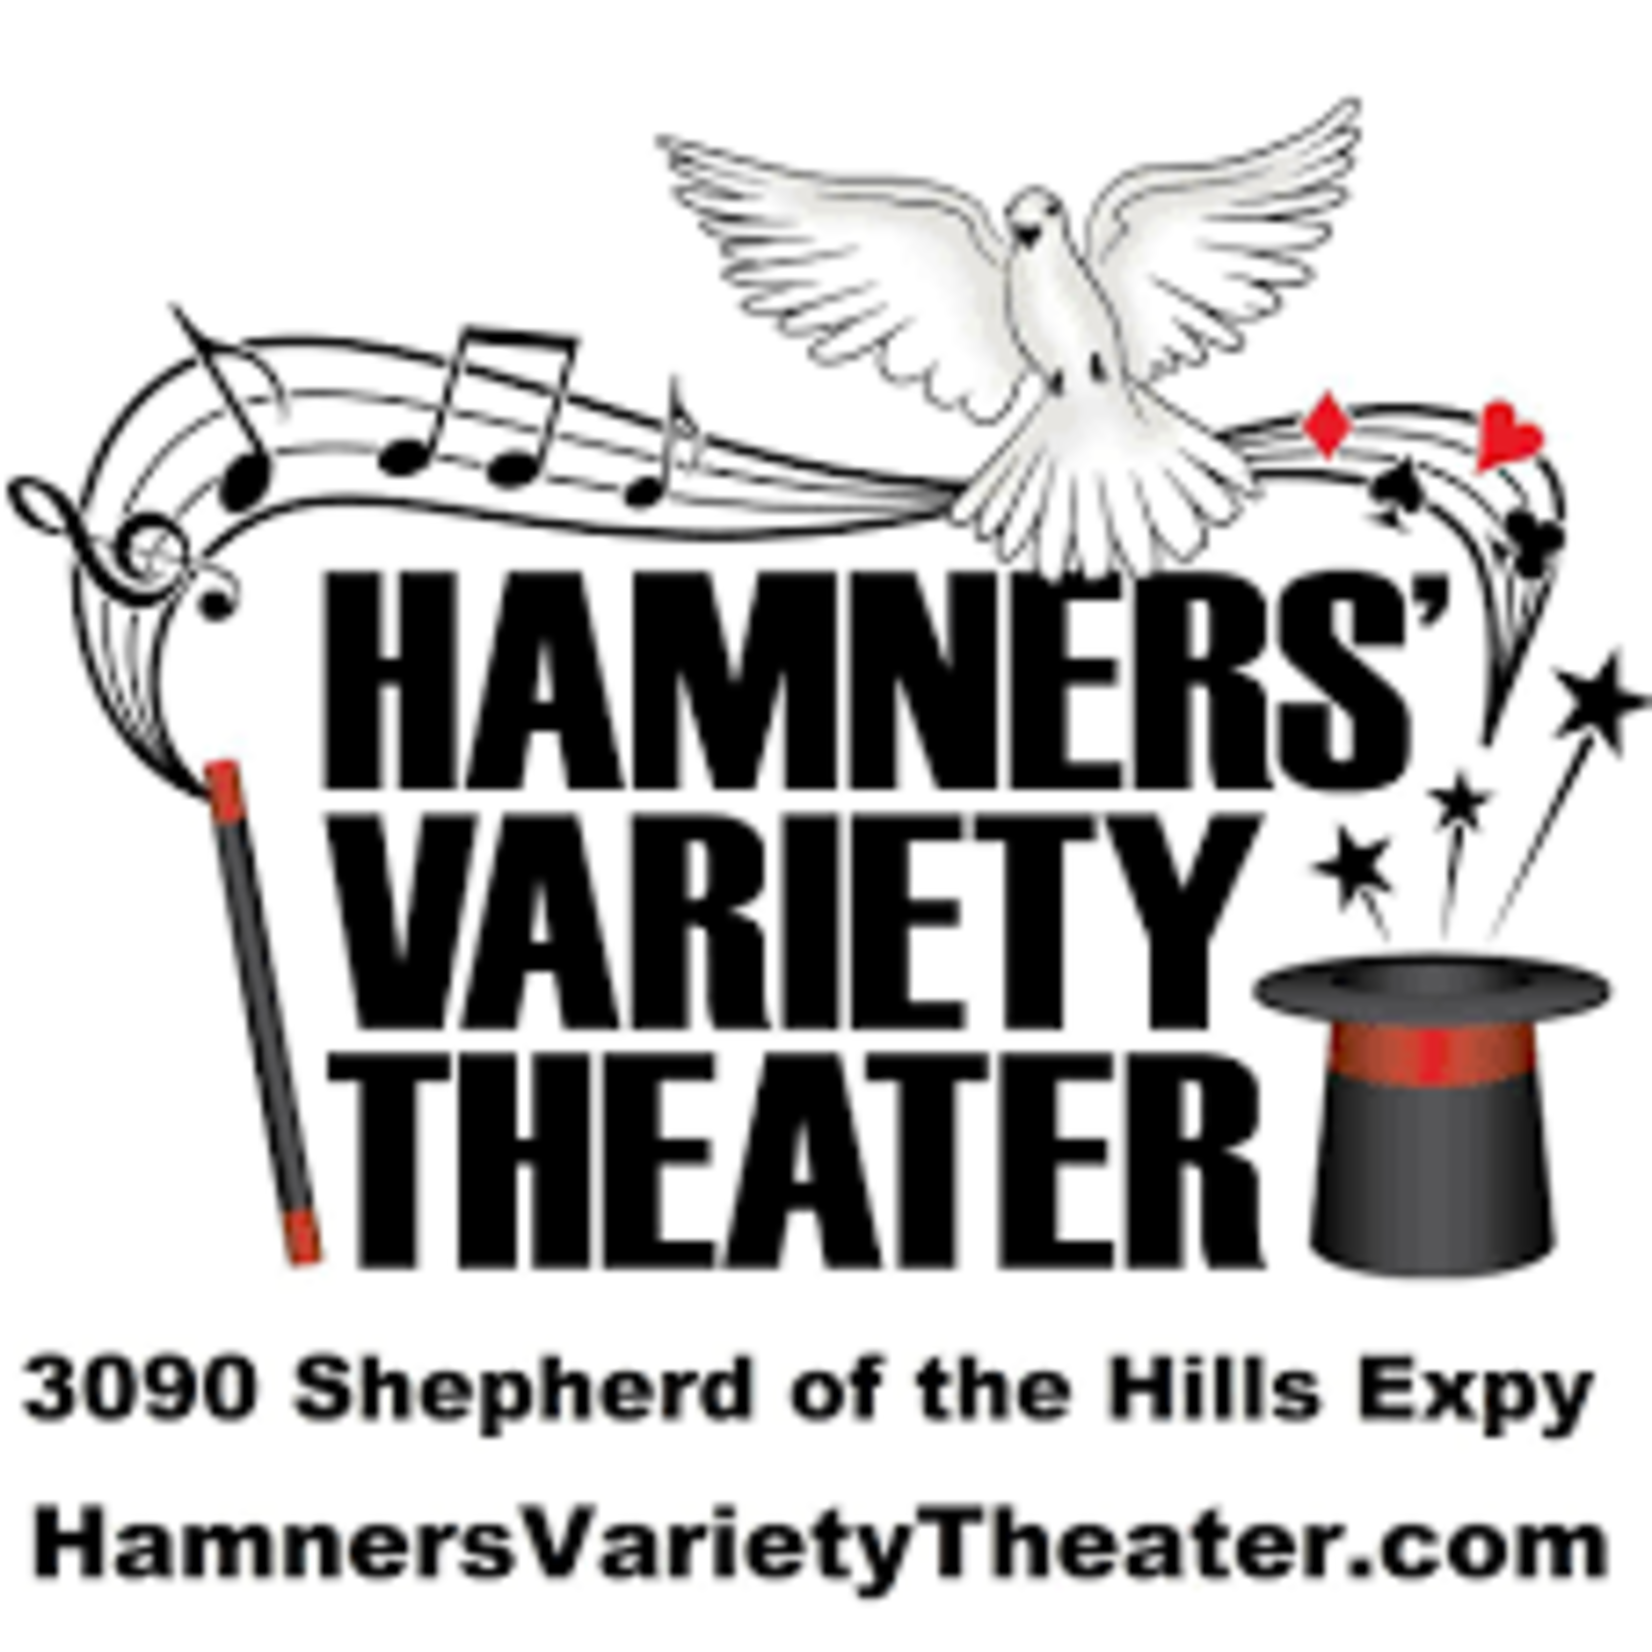 MO-Branson-Hamners' Variety Theatre-Branson MO-Branson-Hamners' Variety Theatre-Branson $68.54 Pair to Magnificent 7 Variety Show